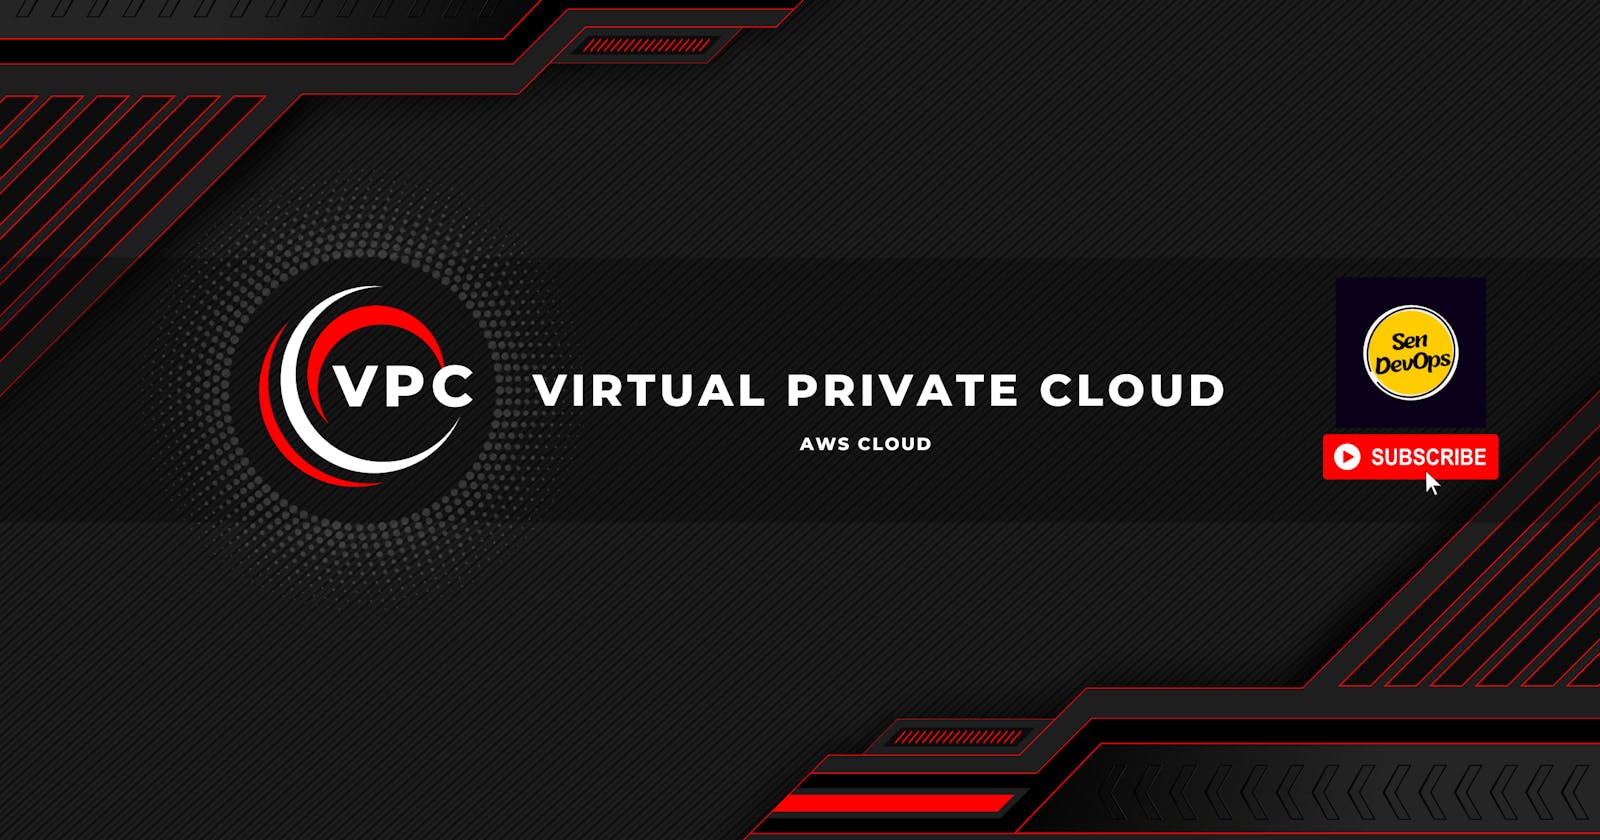 3. VPC - Virtual Private Cloud